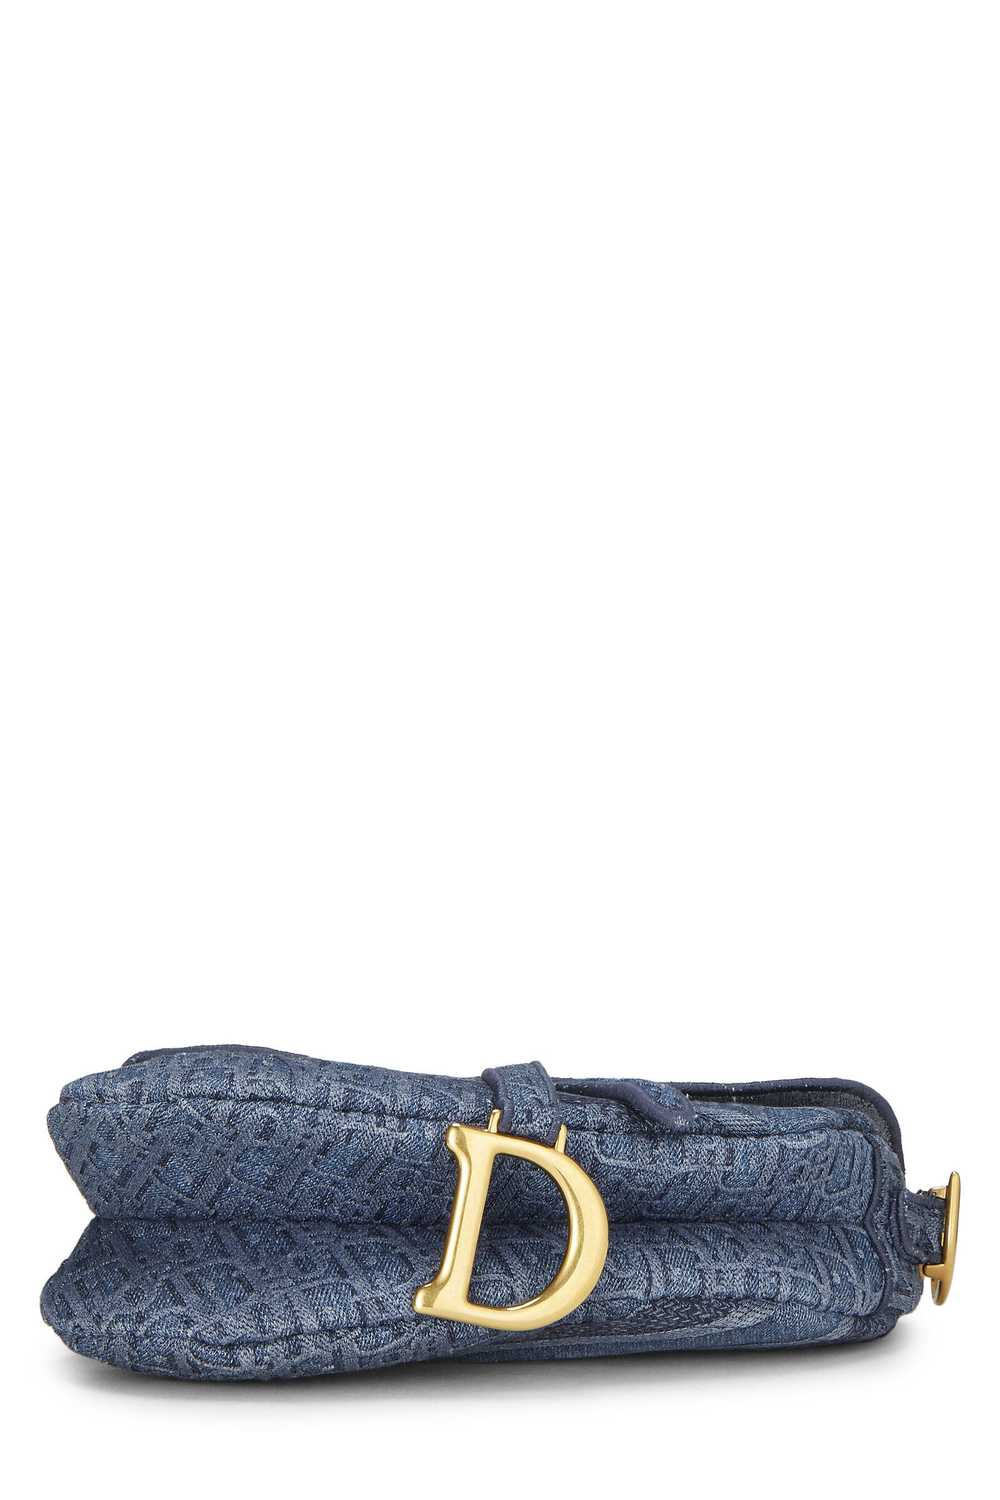 Blue Oblique Denim Saddle Bag - image 5